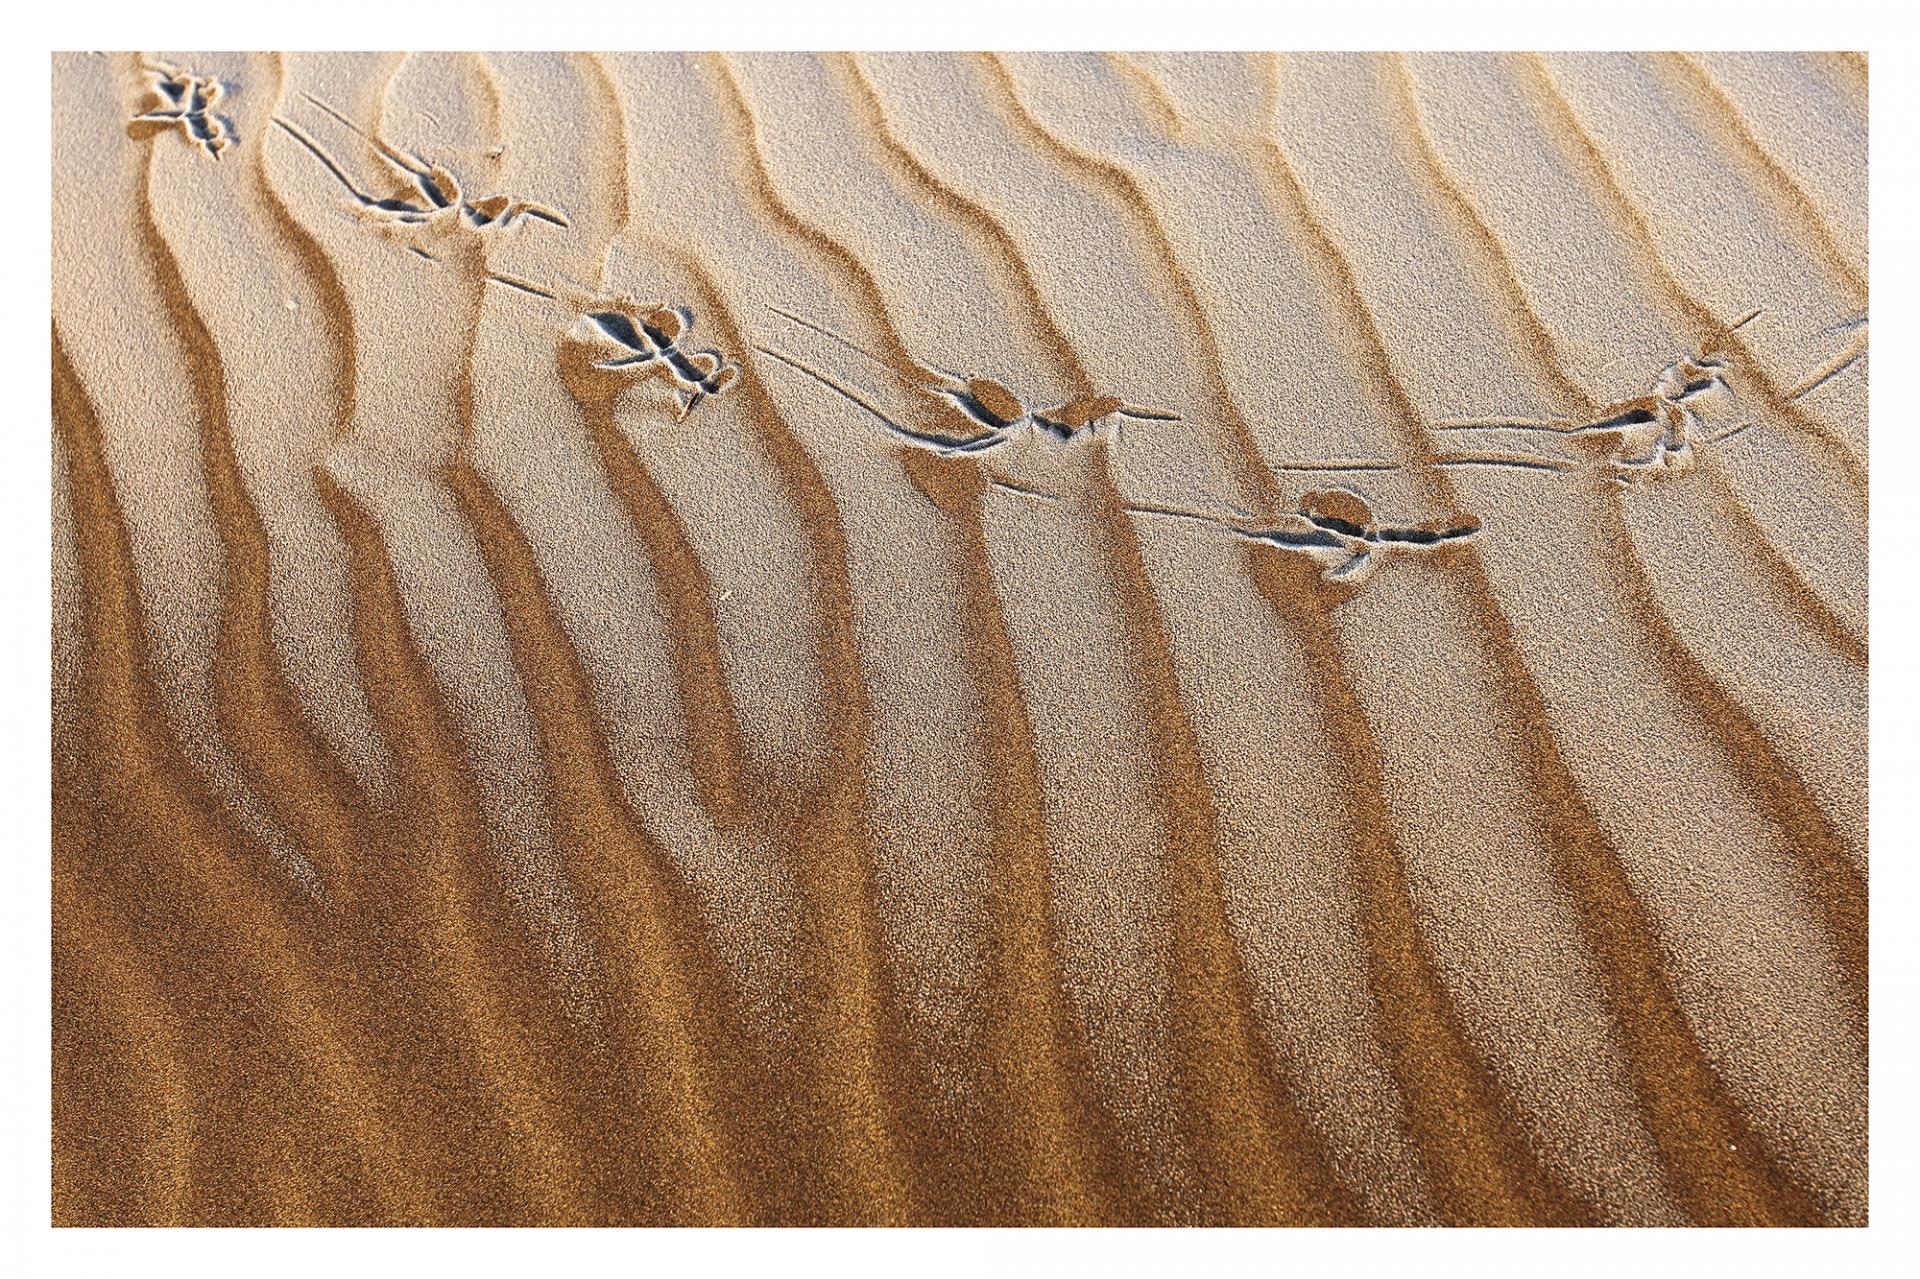 Traces de pas dans les dunes.